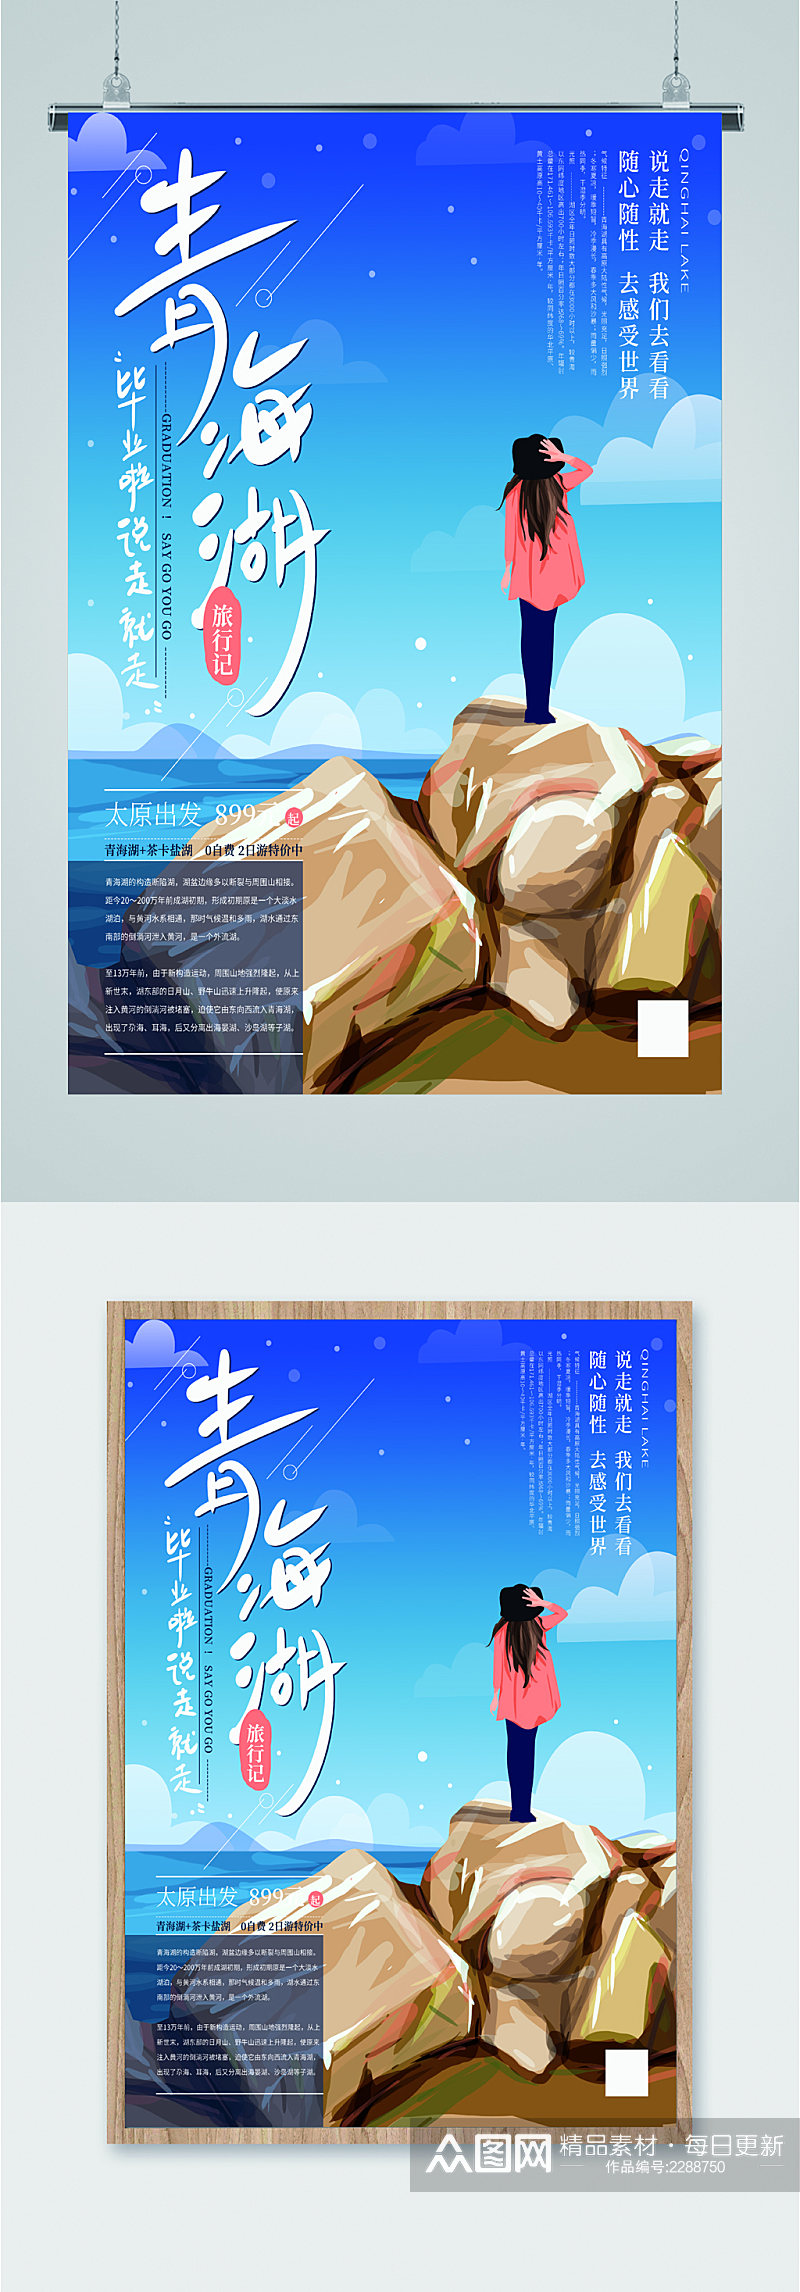 青海湖毕业旅行海报素材